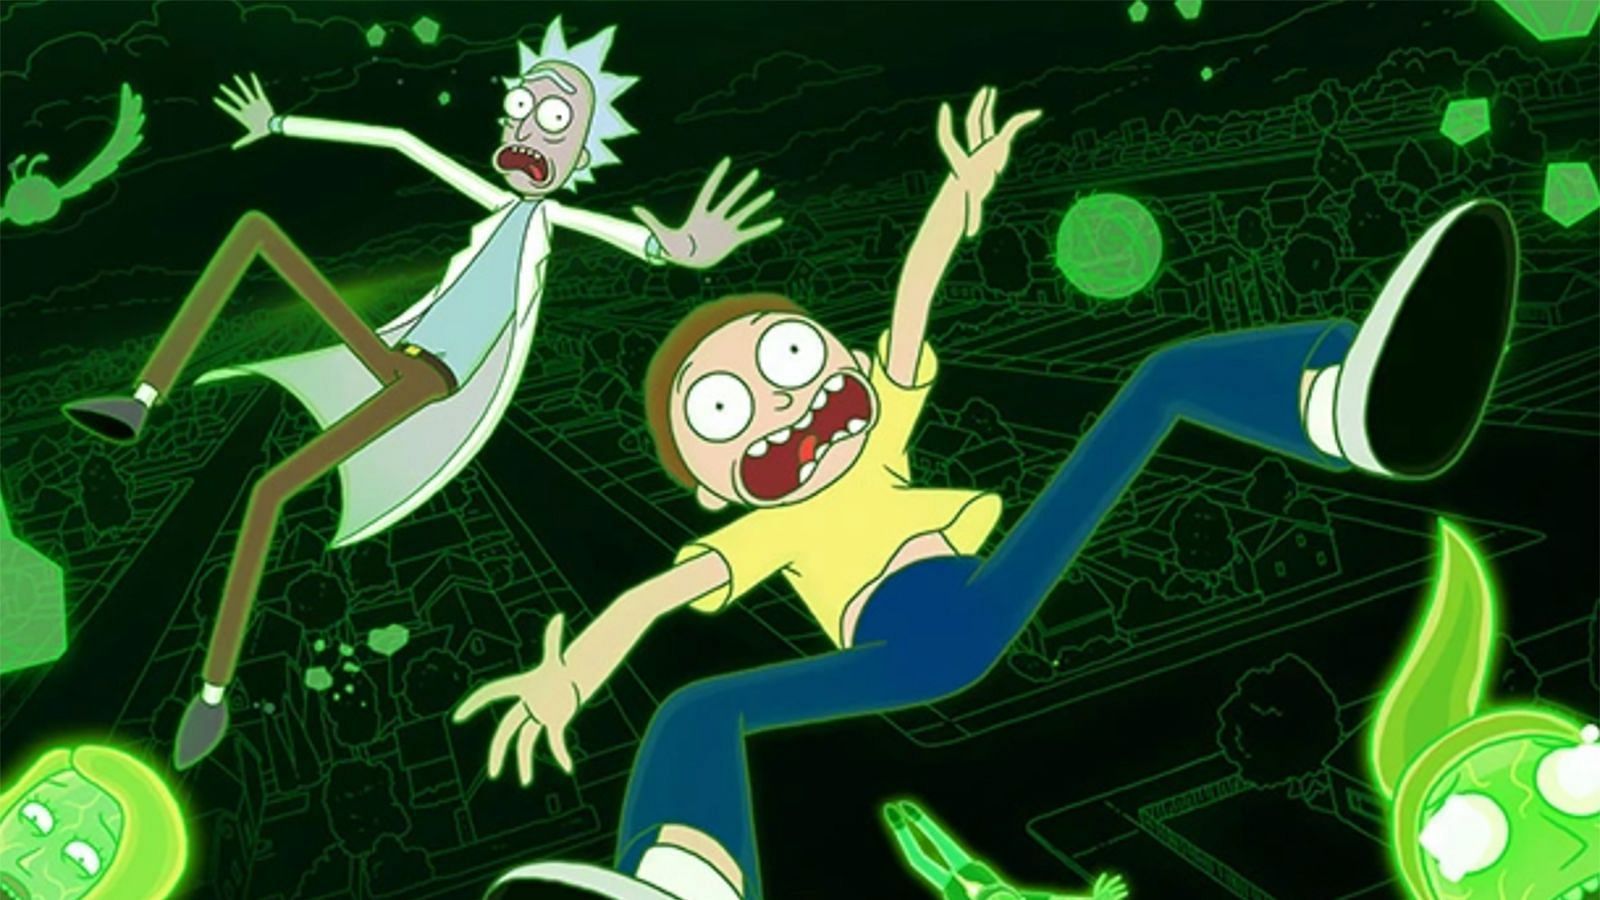 Rick and Morty (Image via Adult Swim)